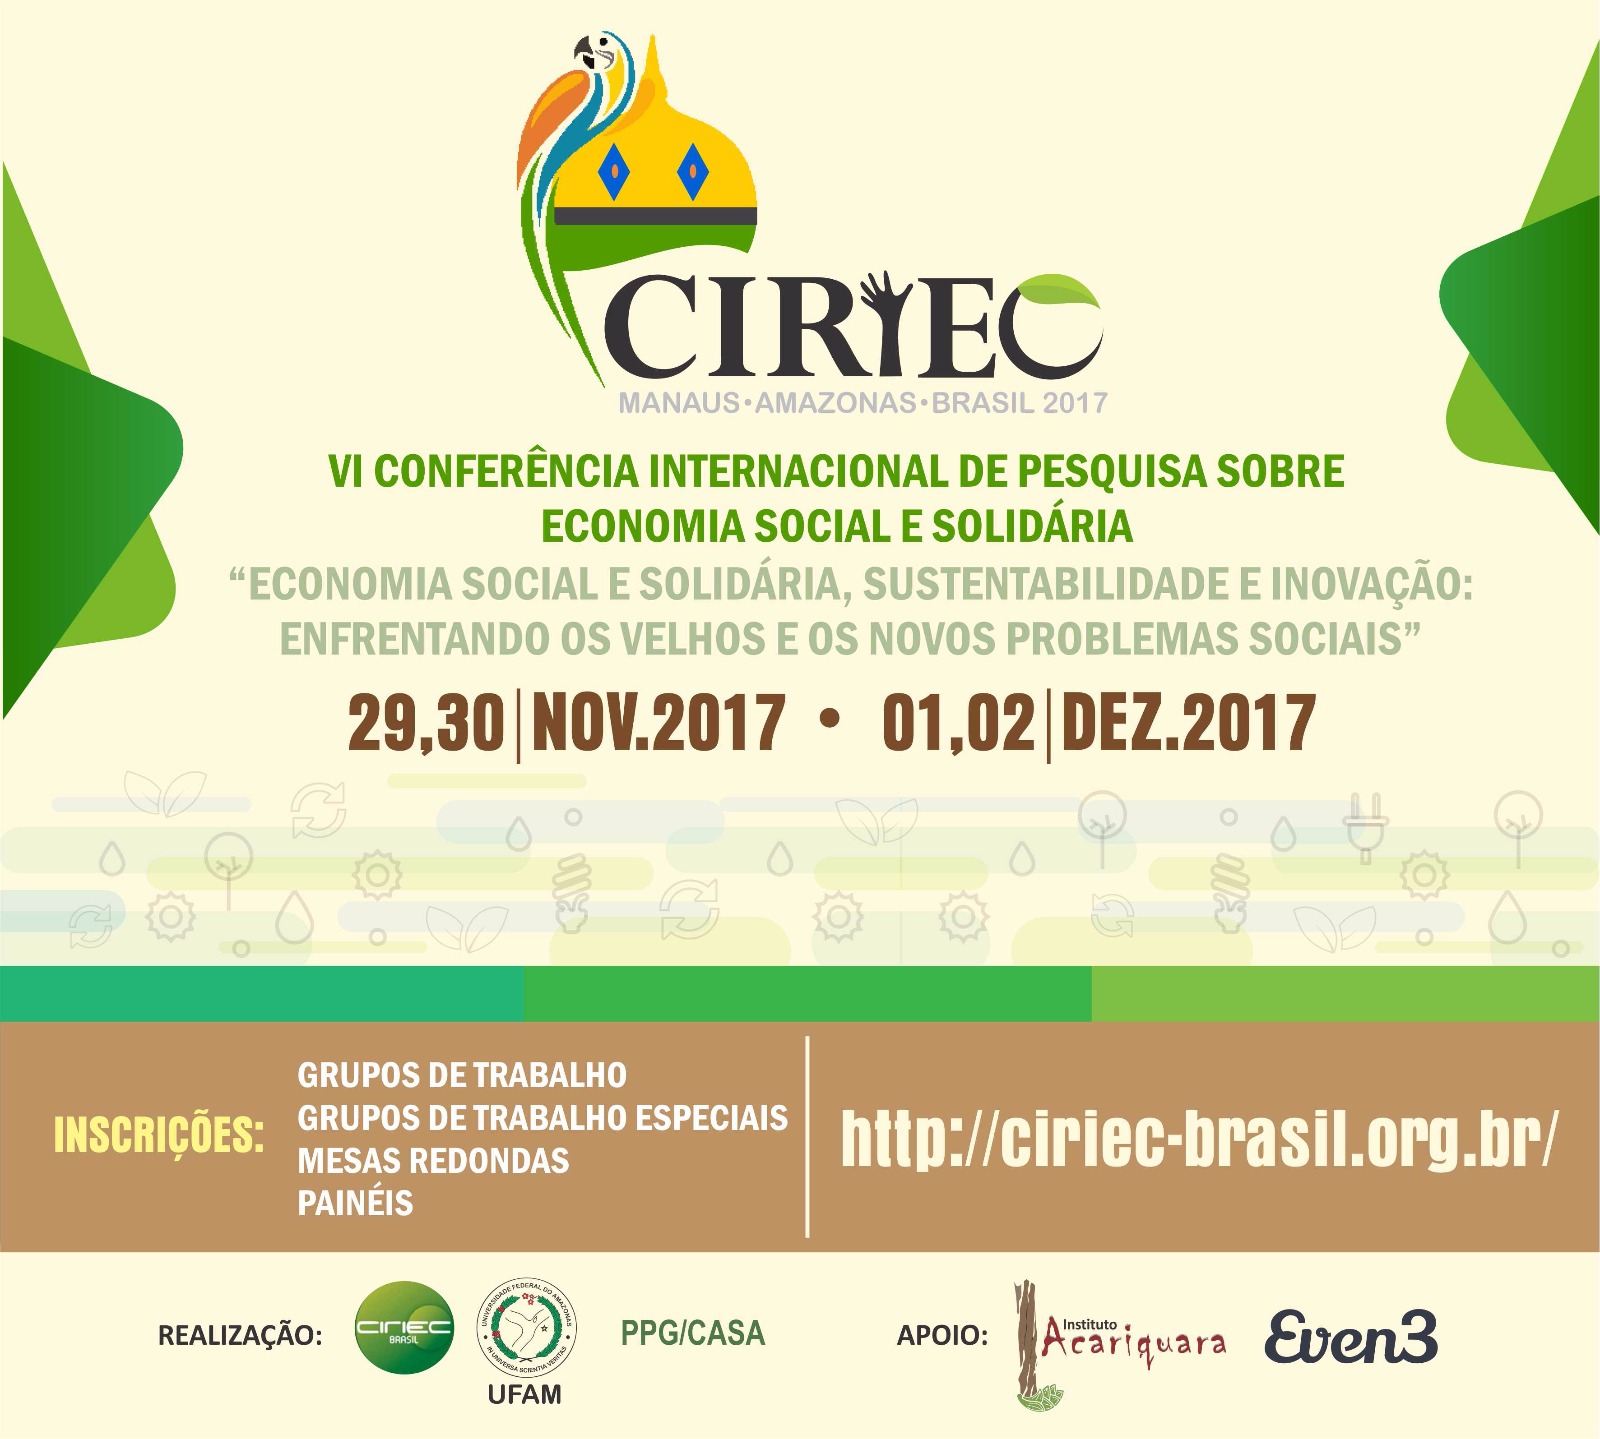 VI Conferência Internacional de Pesquisa sobre Economia Social e Solidária - CIRIEC 